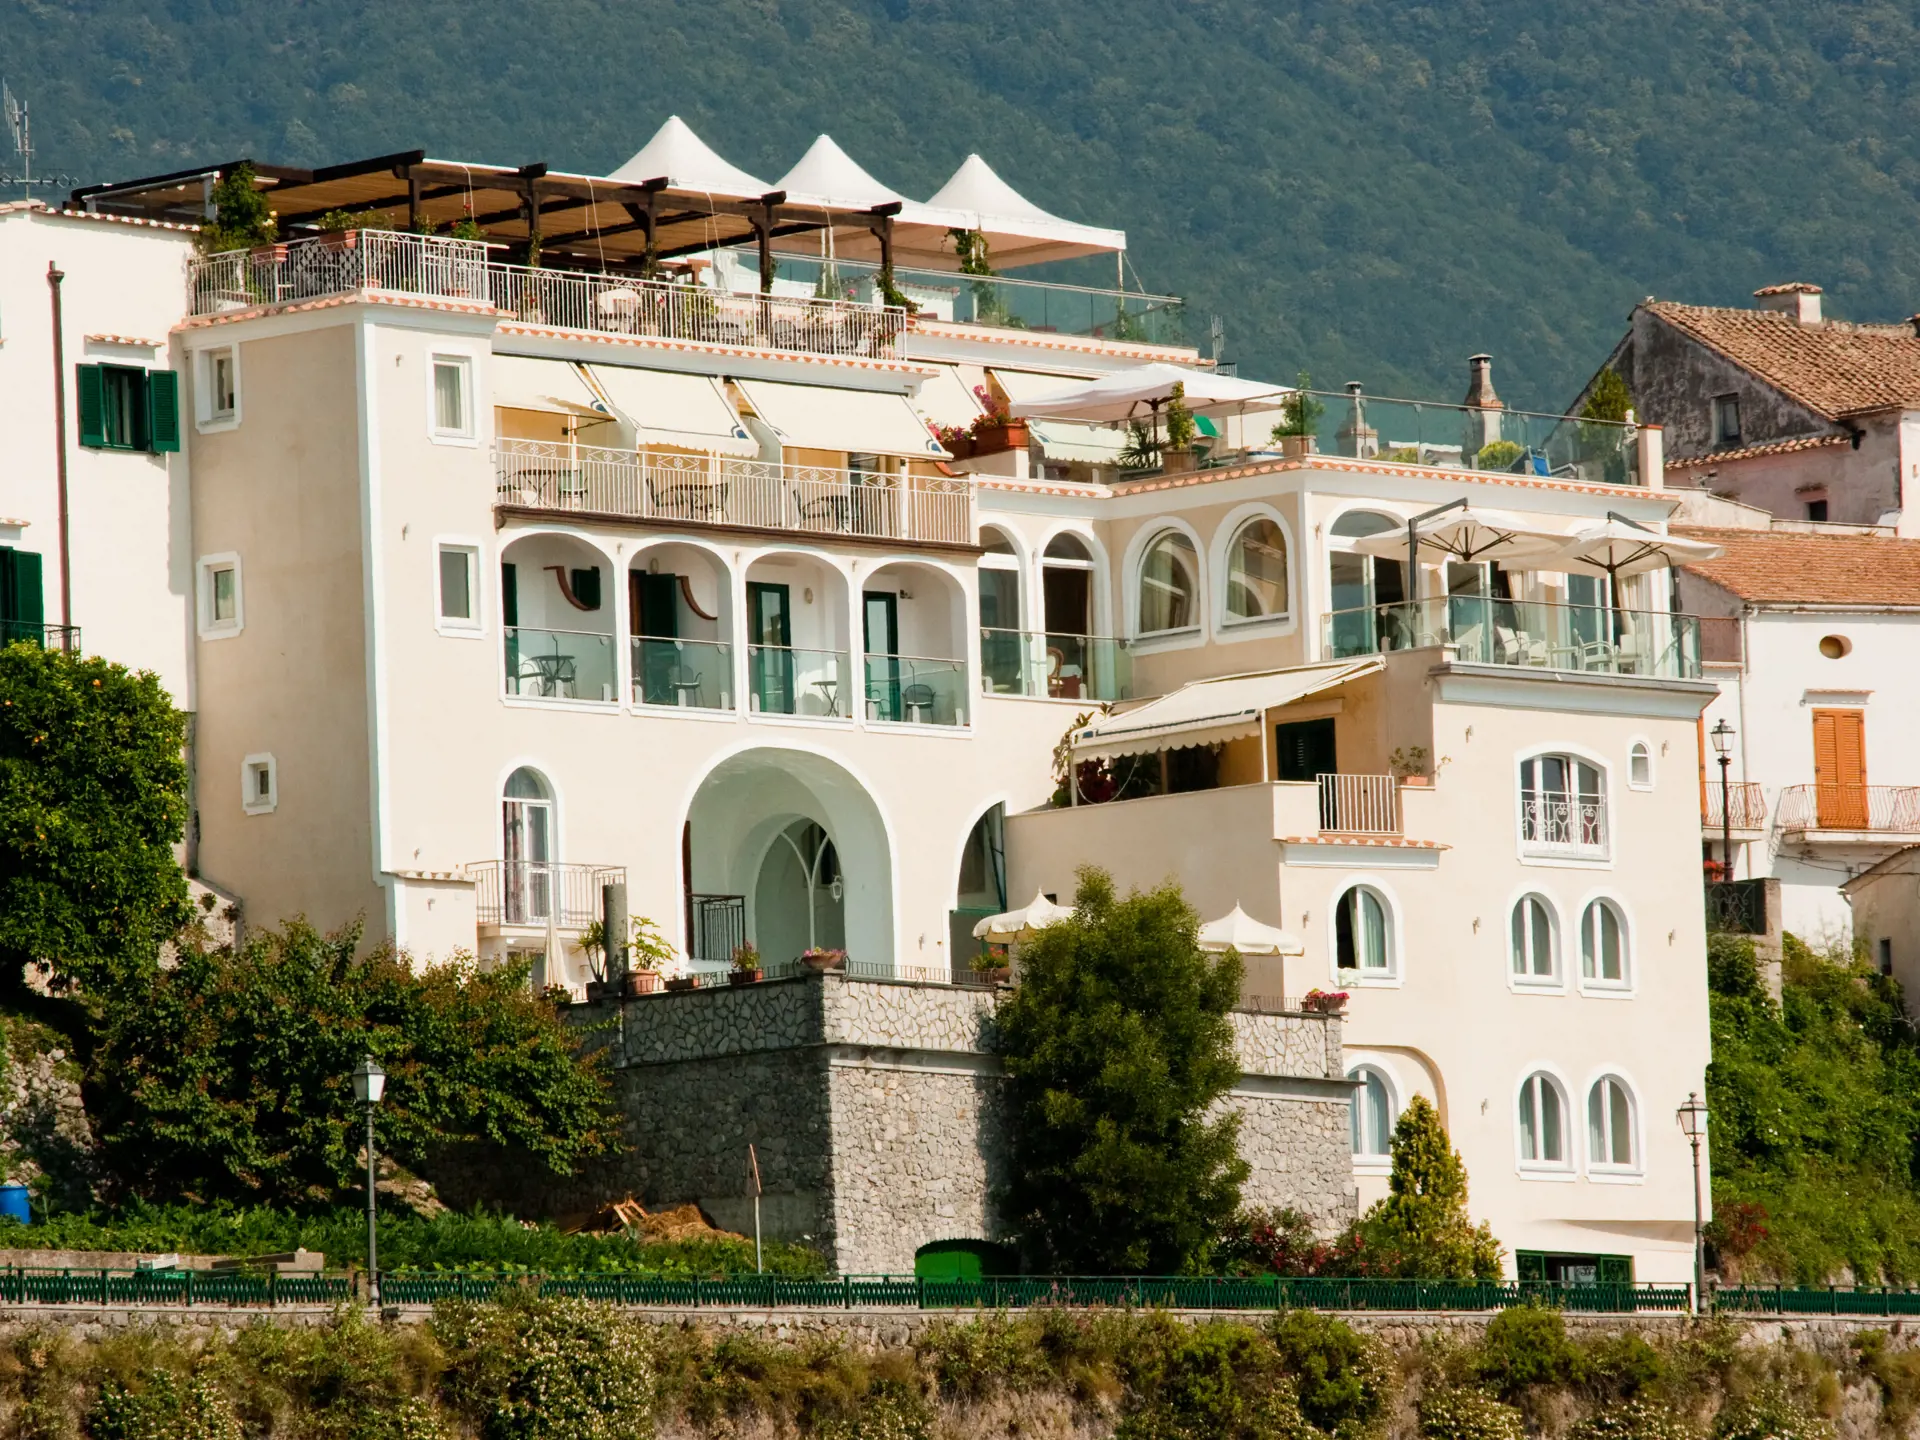 Hotel Bonadies ligger i en skråning i Ravello med en unik utsikt